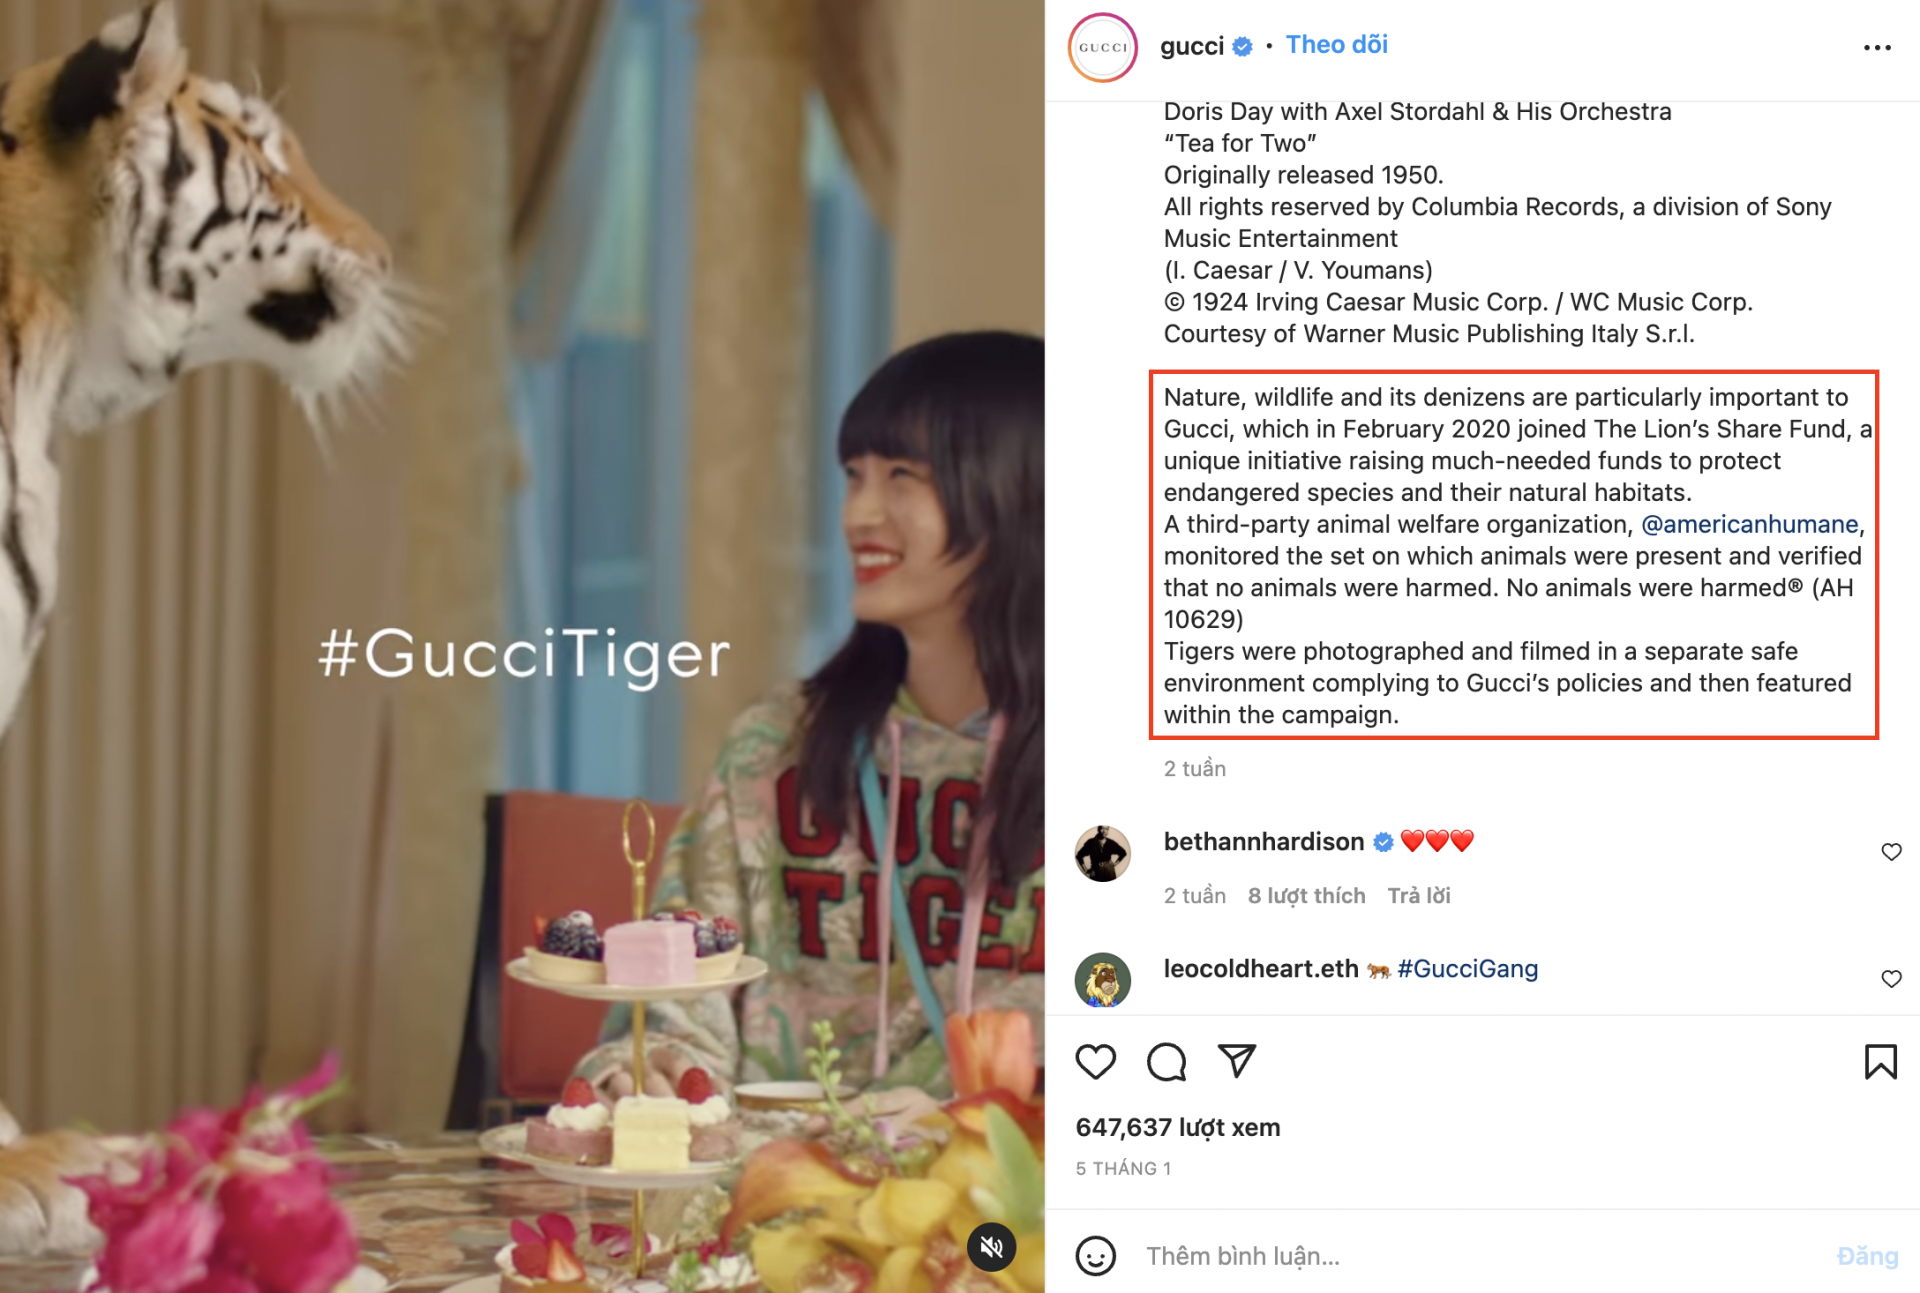 Mặc dù Gucci đã chú thích rằng những chú hổ này được giám sát trong môi trường an toàn nhưng vẫn bị netizen chỉ trích là ngược đãi động vật.